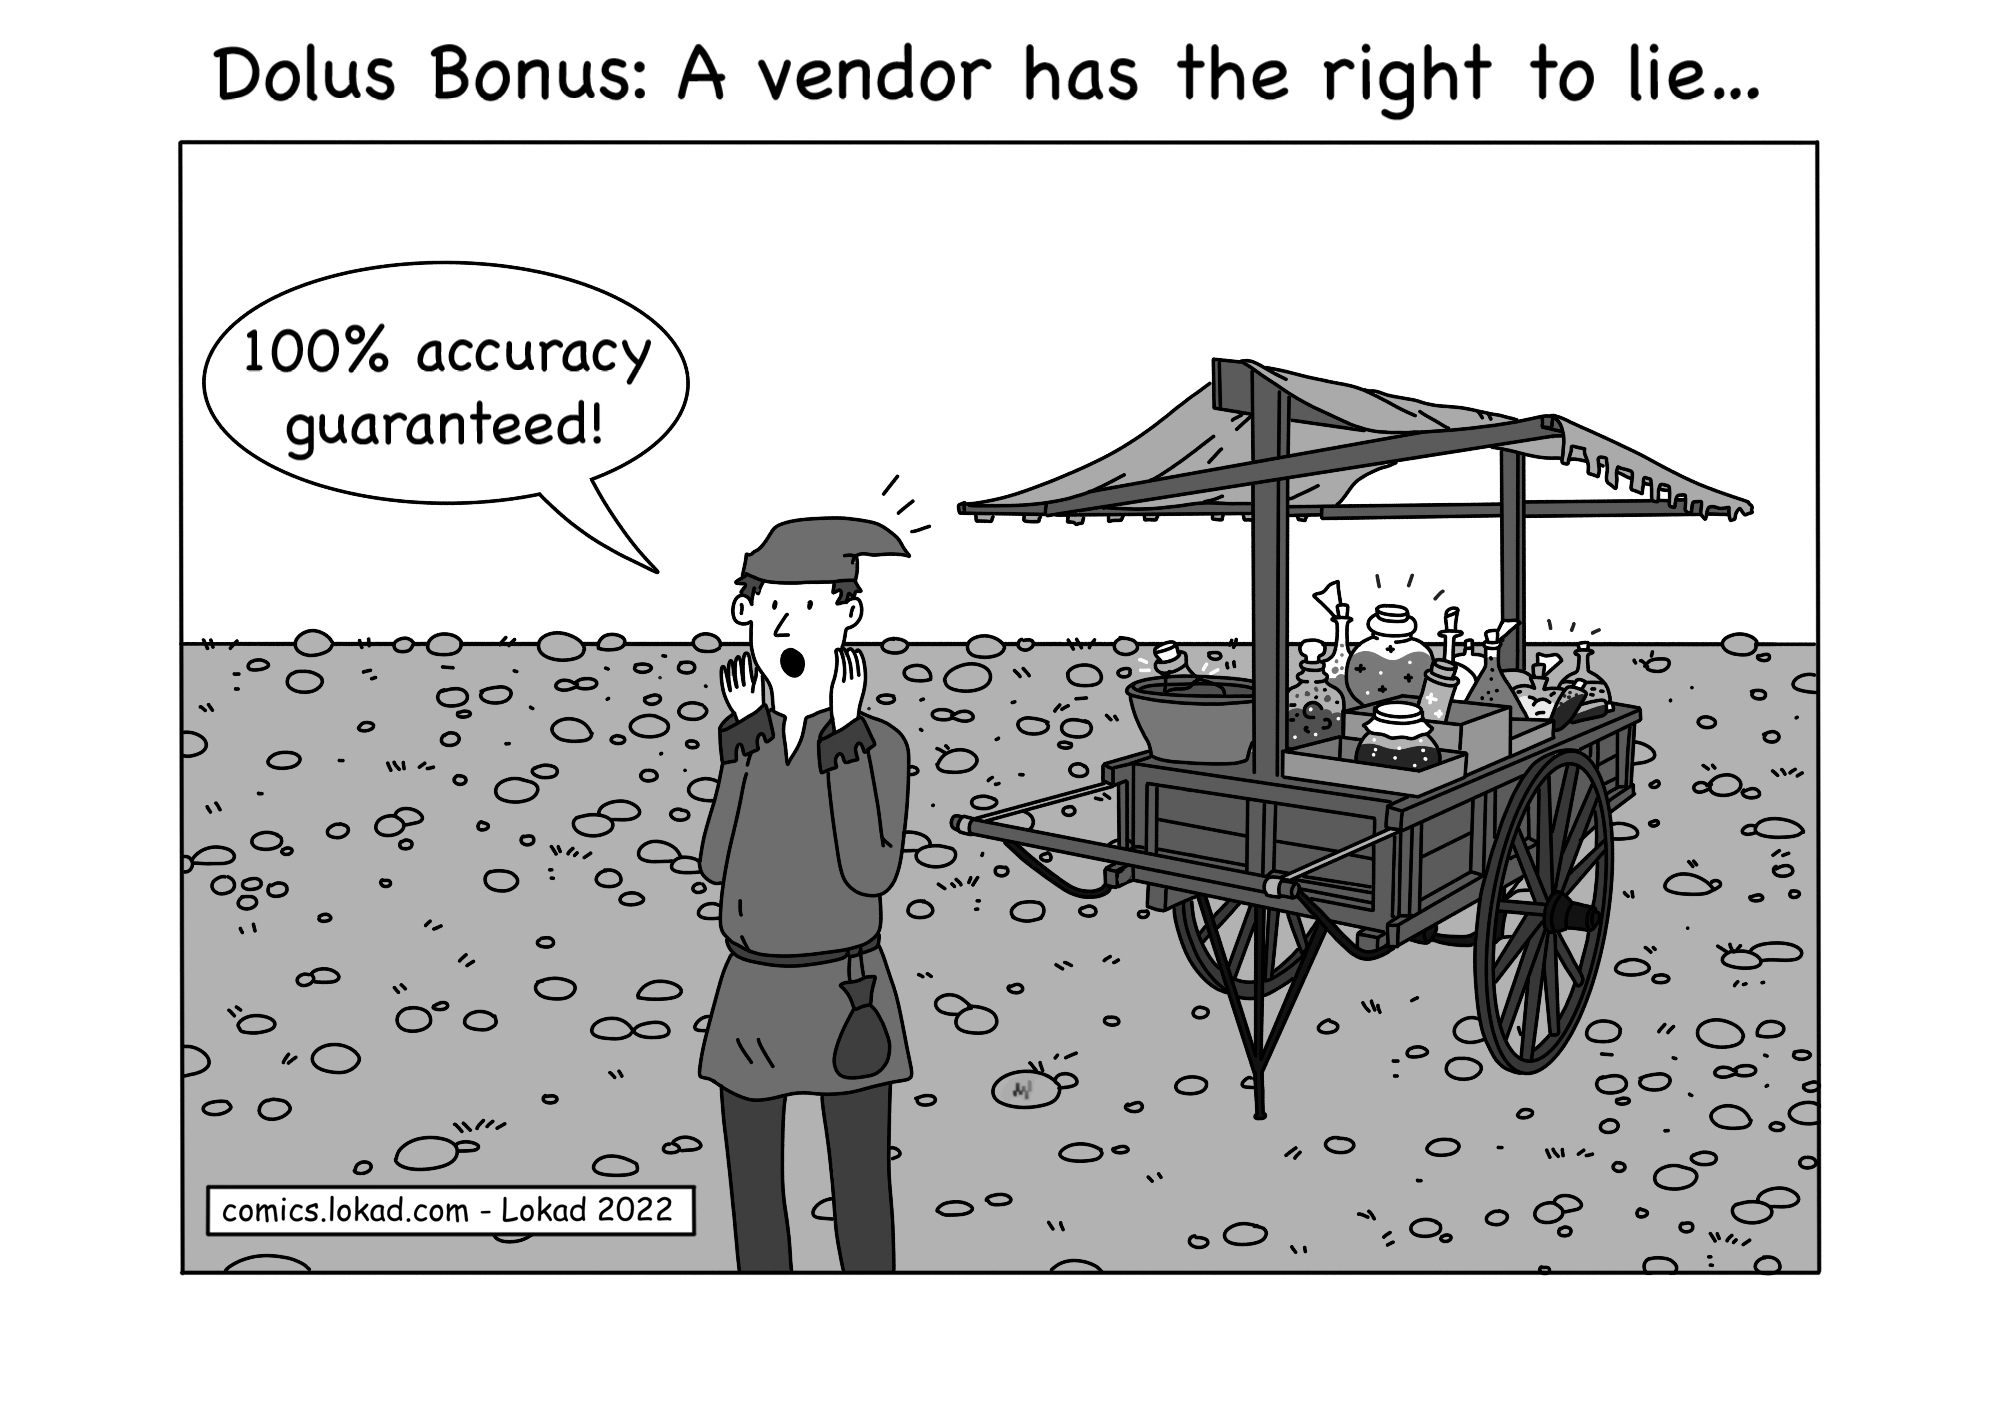 Dolus Bonus: A vendor has the right to lie...